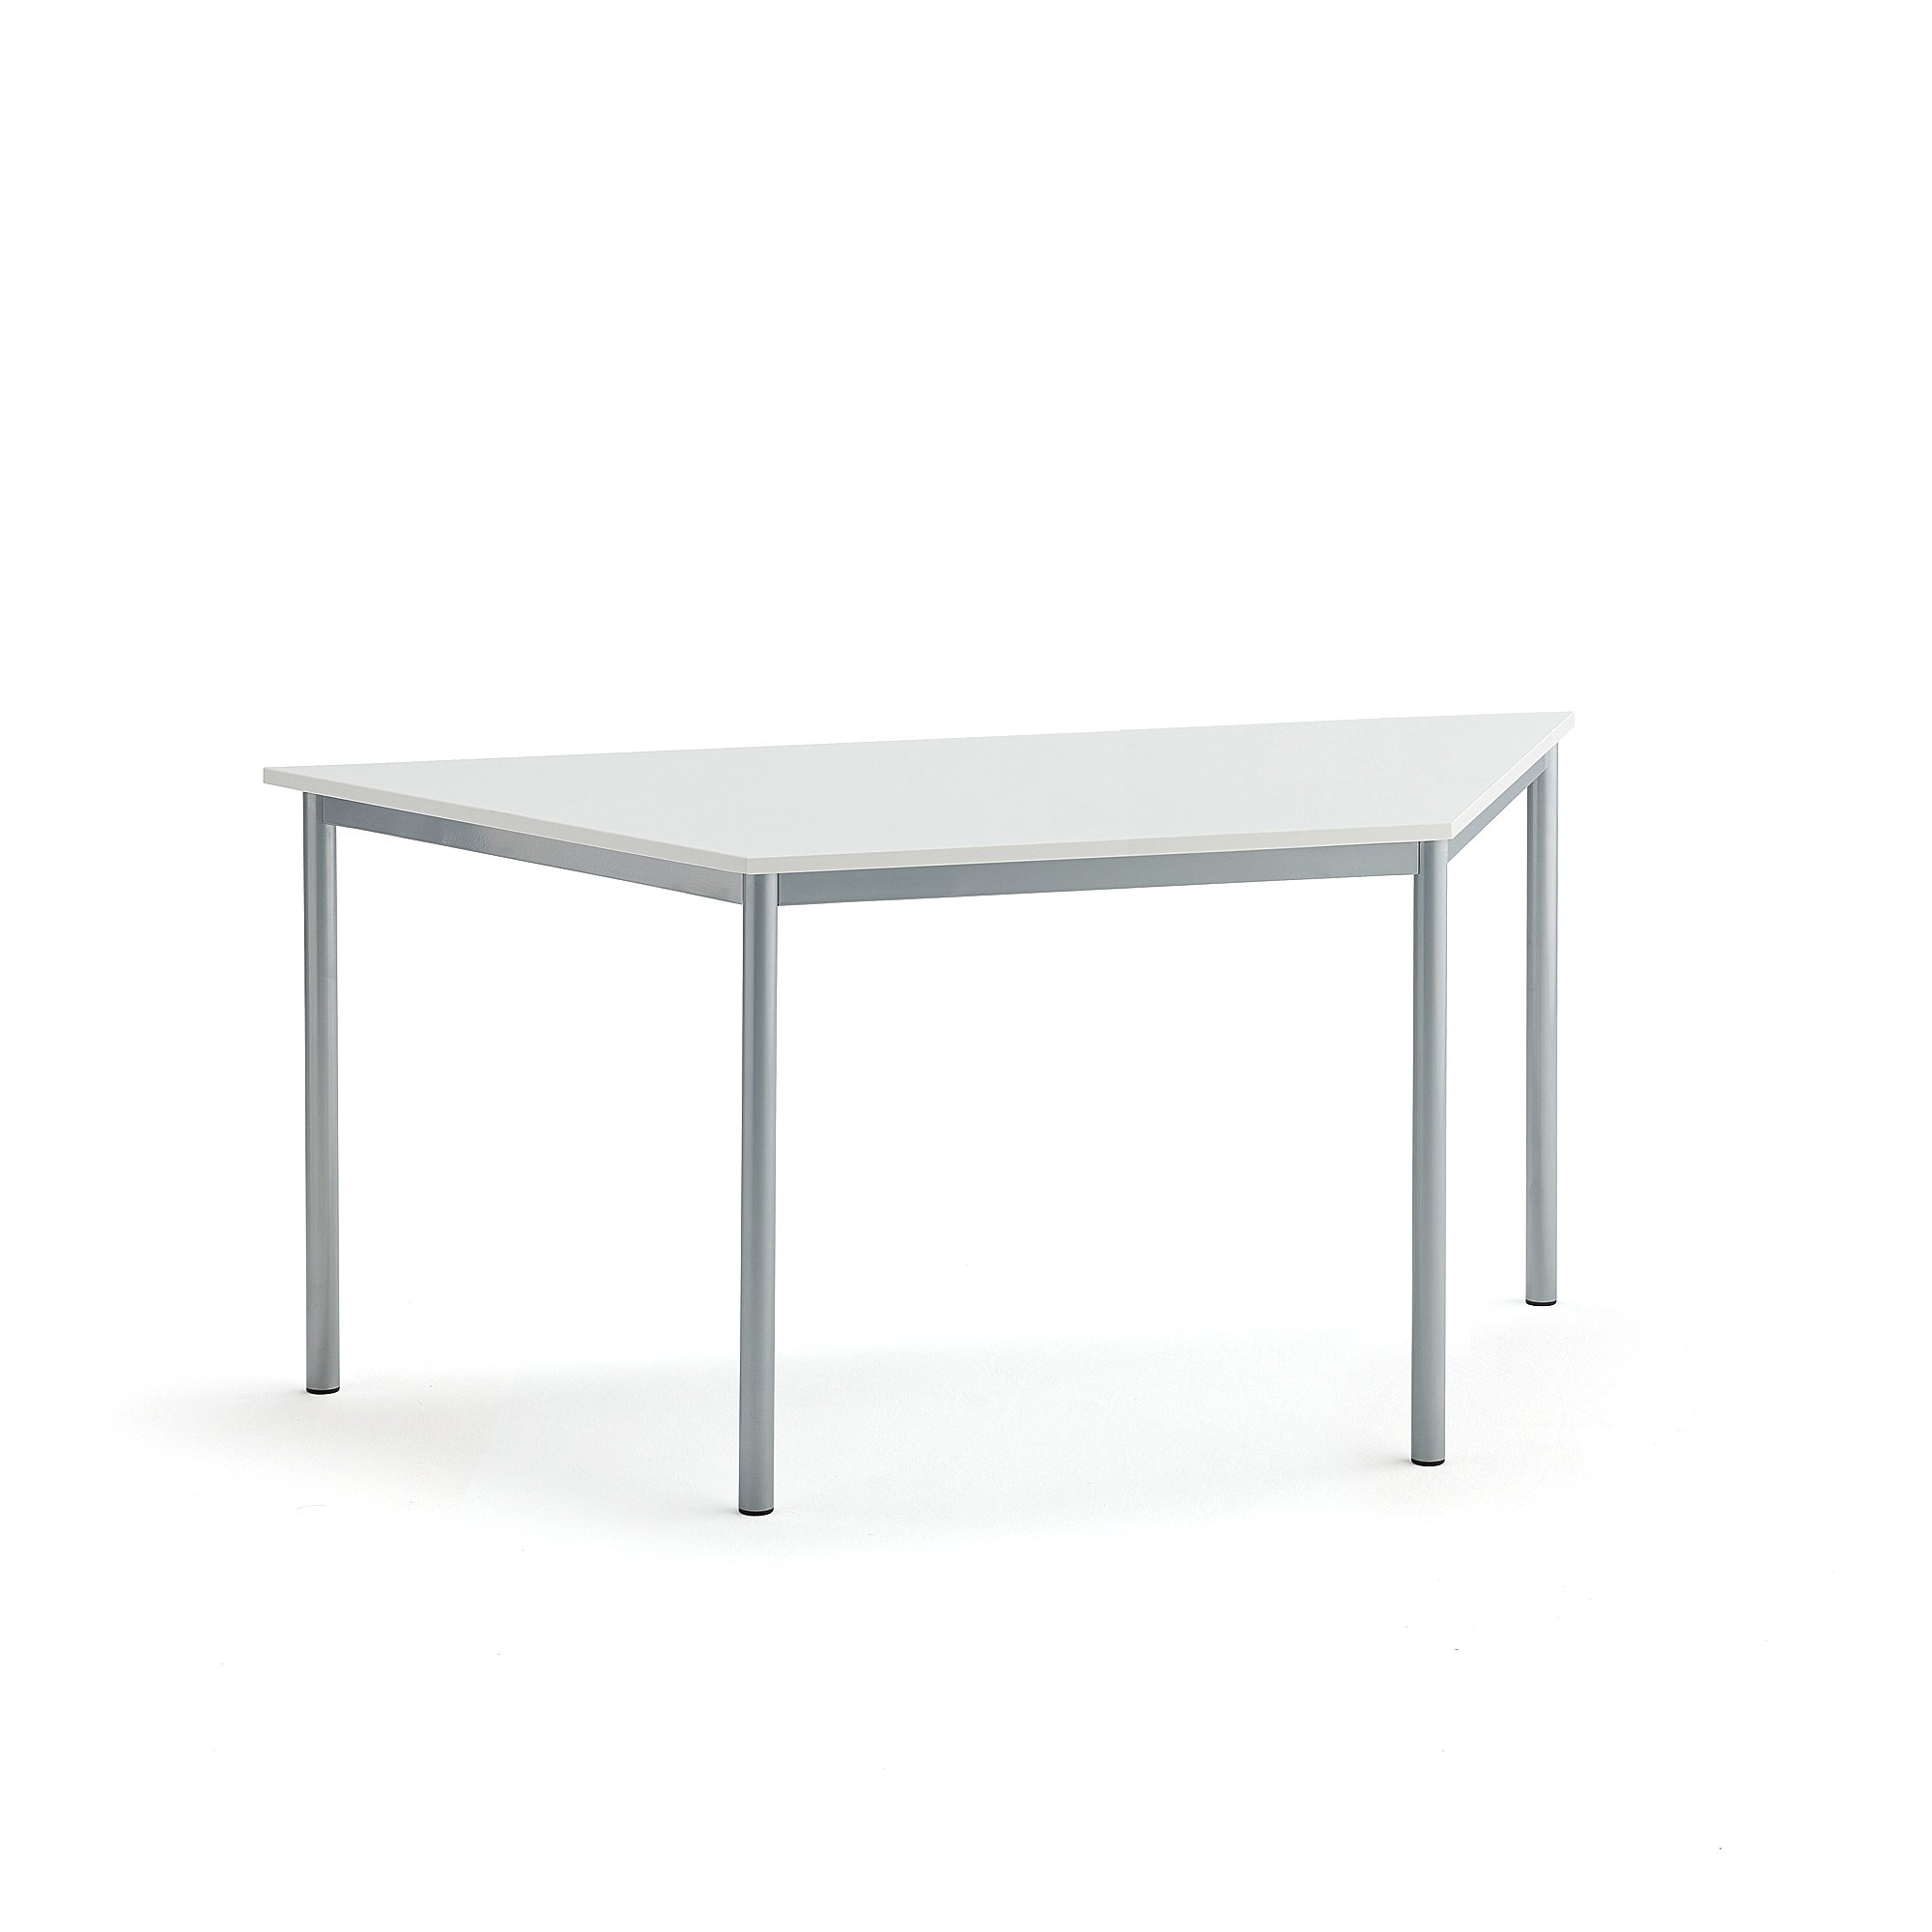 Stůl SONITUS TRAPETS, 1600x800x720 mm, stříbrné nohy, HPL deska tlumící hluk, bílá